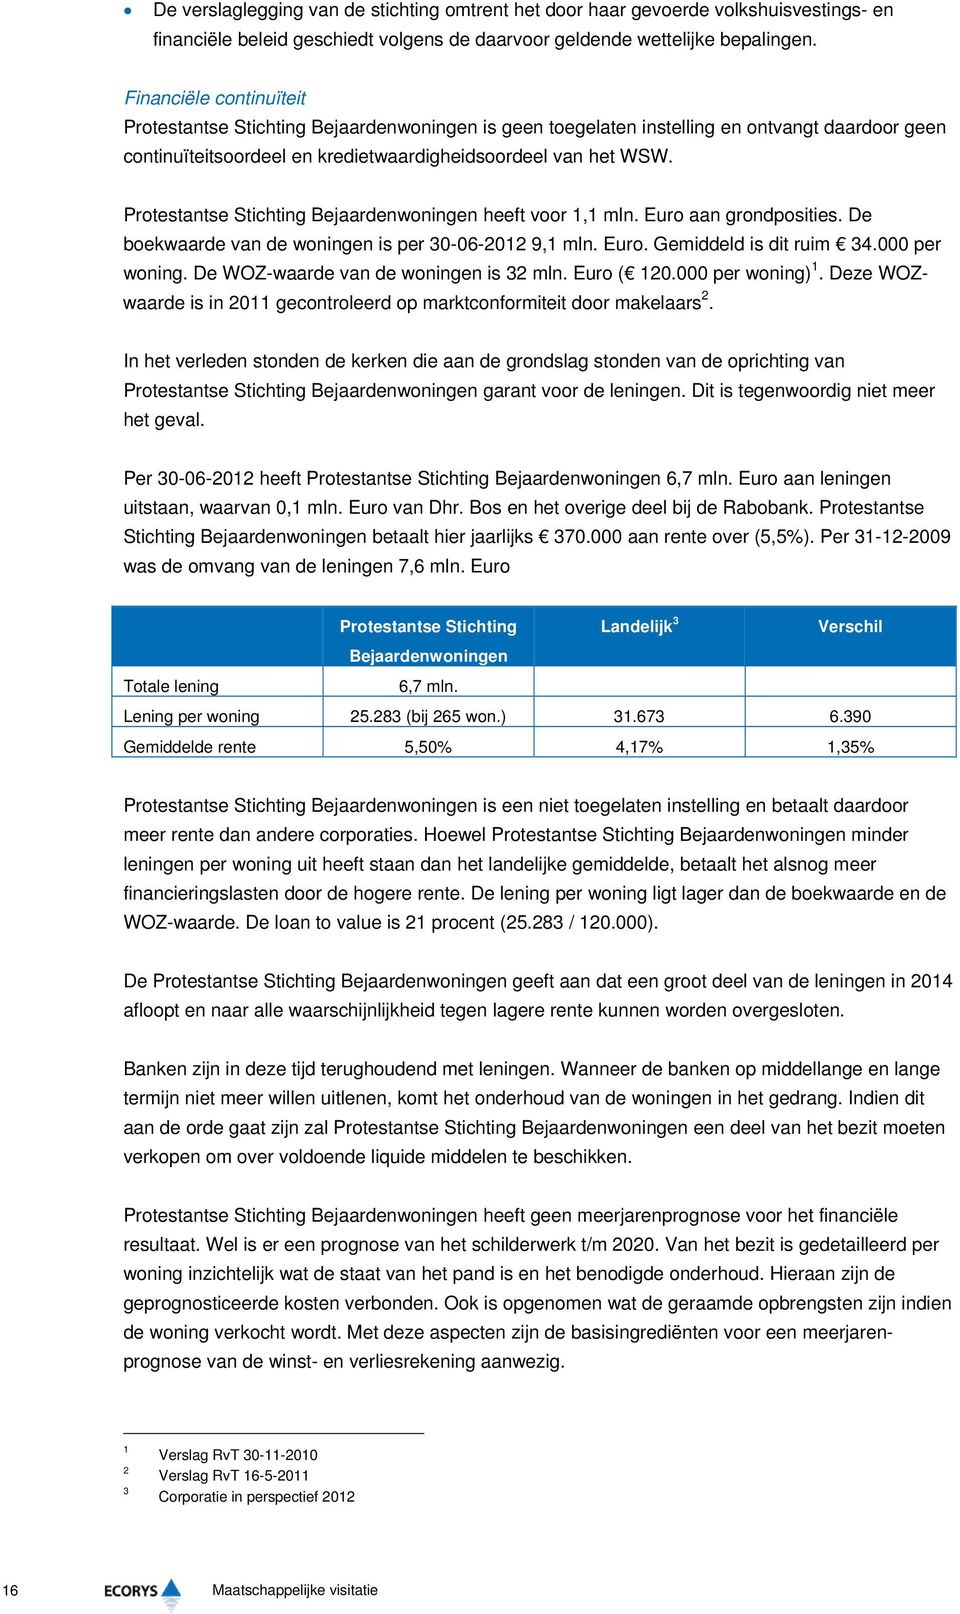 Protestantse Stichting Bejaardenwoningen heeft voor 1,1 mln. Euro aan grondposities. De boekwaarde van de woningen is per 30-06-2012 9,1 mln. Euro. Gemiddeld is dit ruim 34.000 per woning.